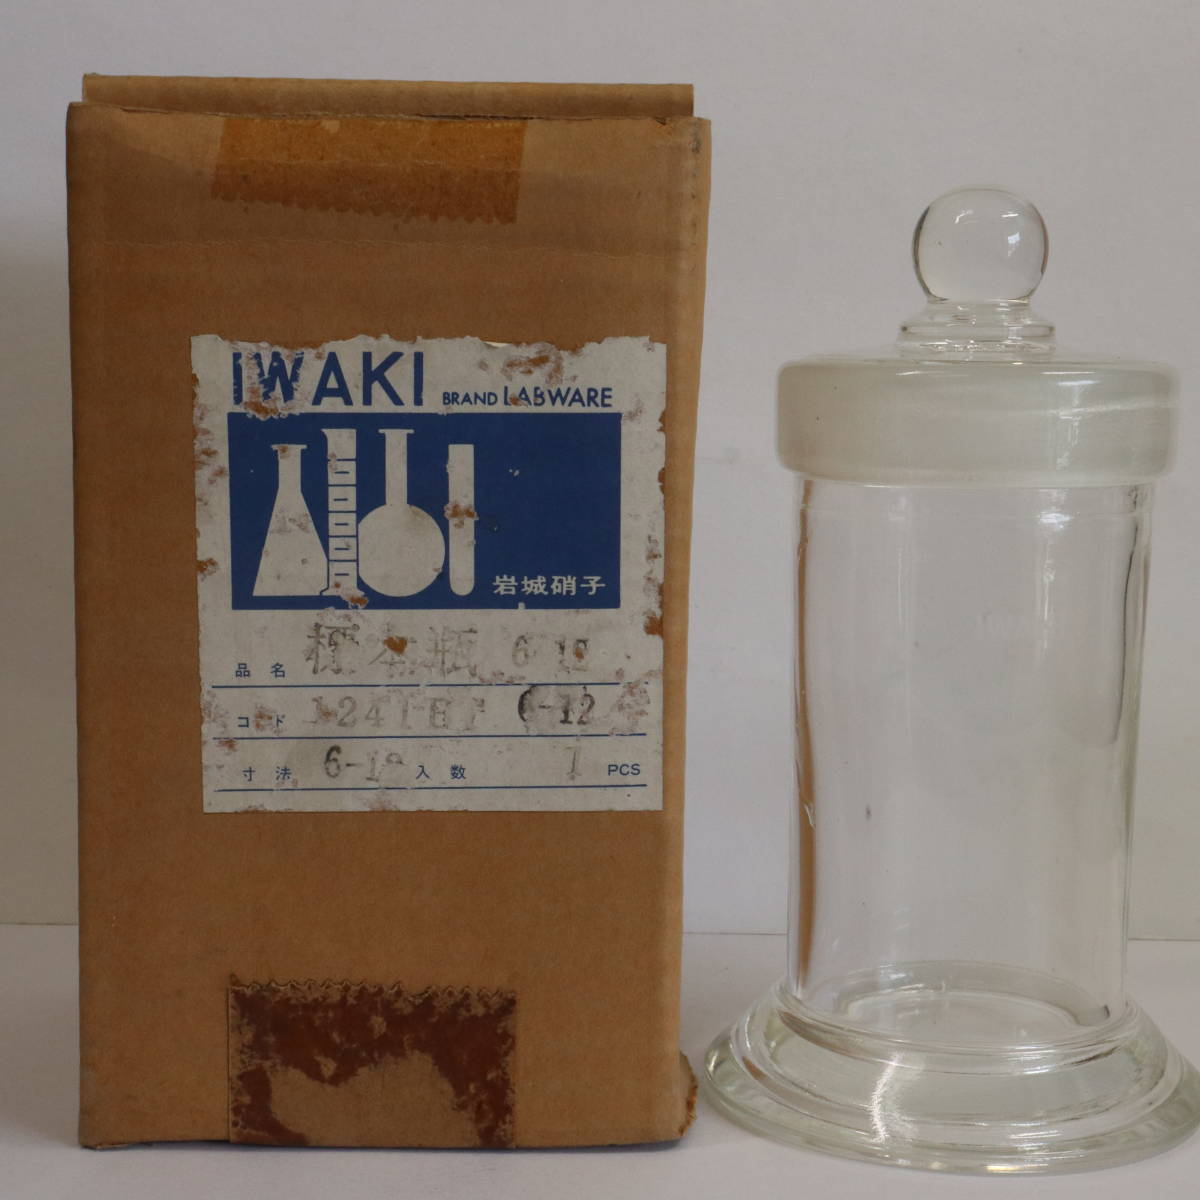 岩城硝子(イワキガラス)★標本瓶 iwaki labware 6-12 胴径×高さ:φ67×175mm★ガラス容器 保存容器 理化学 病院 実験 標本 薬瓶